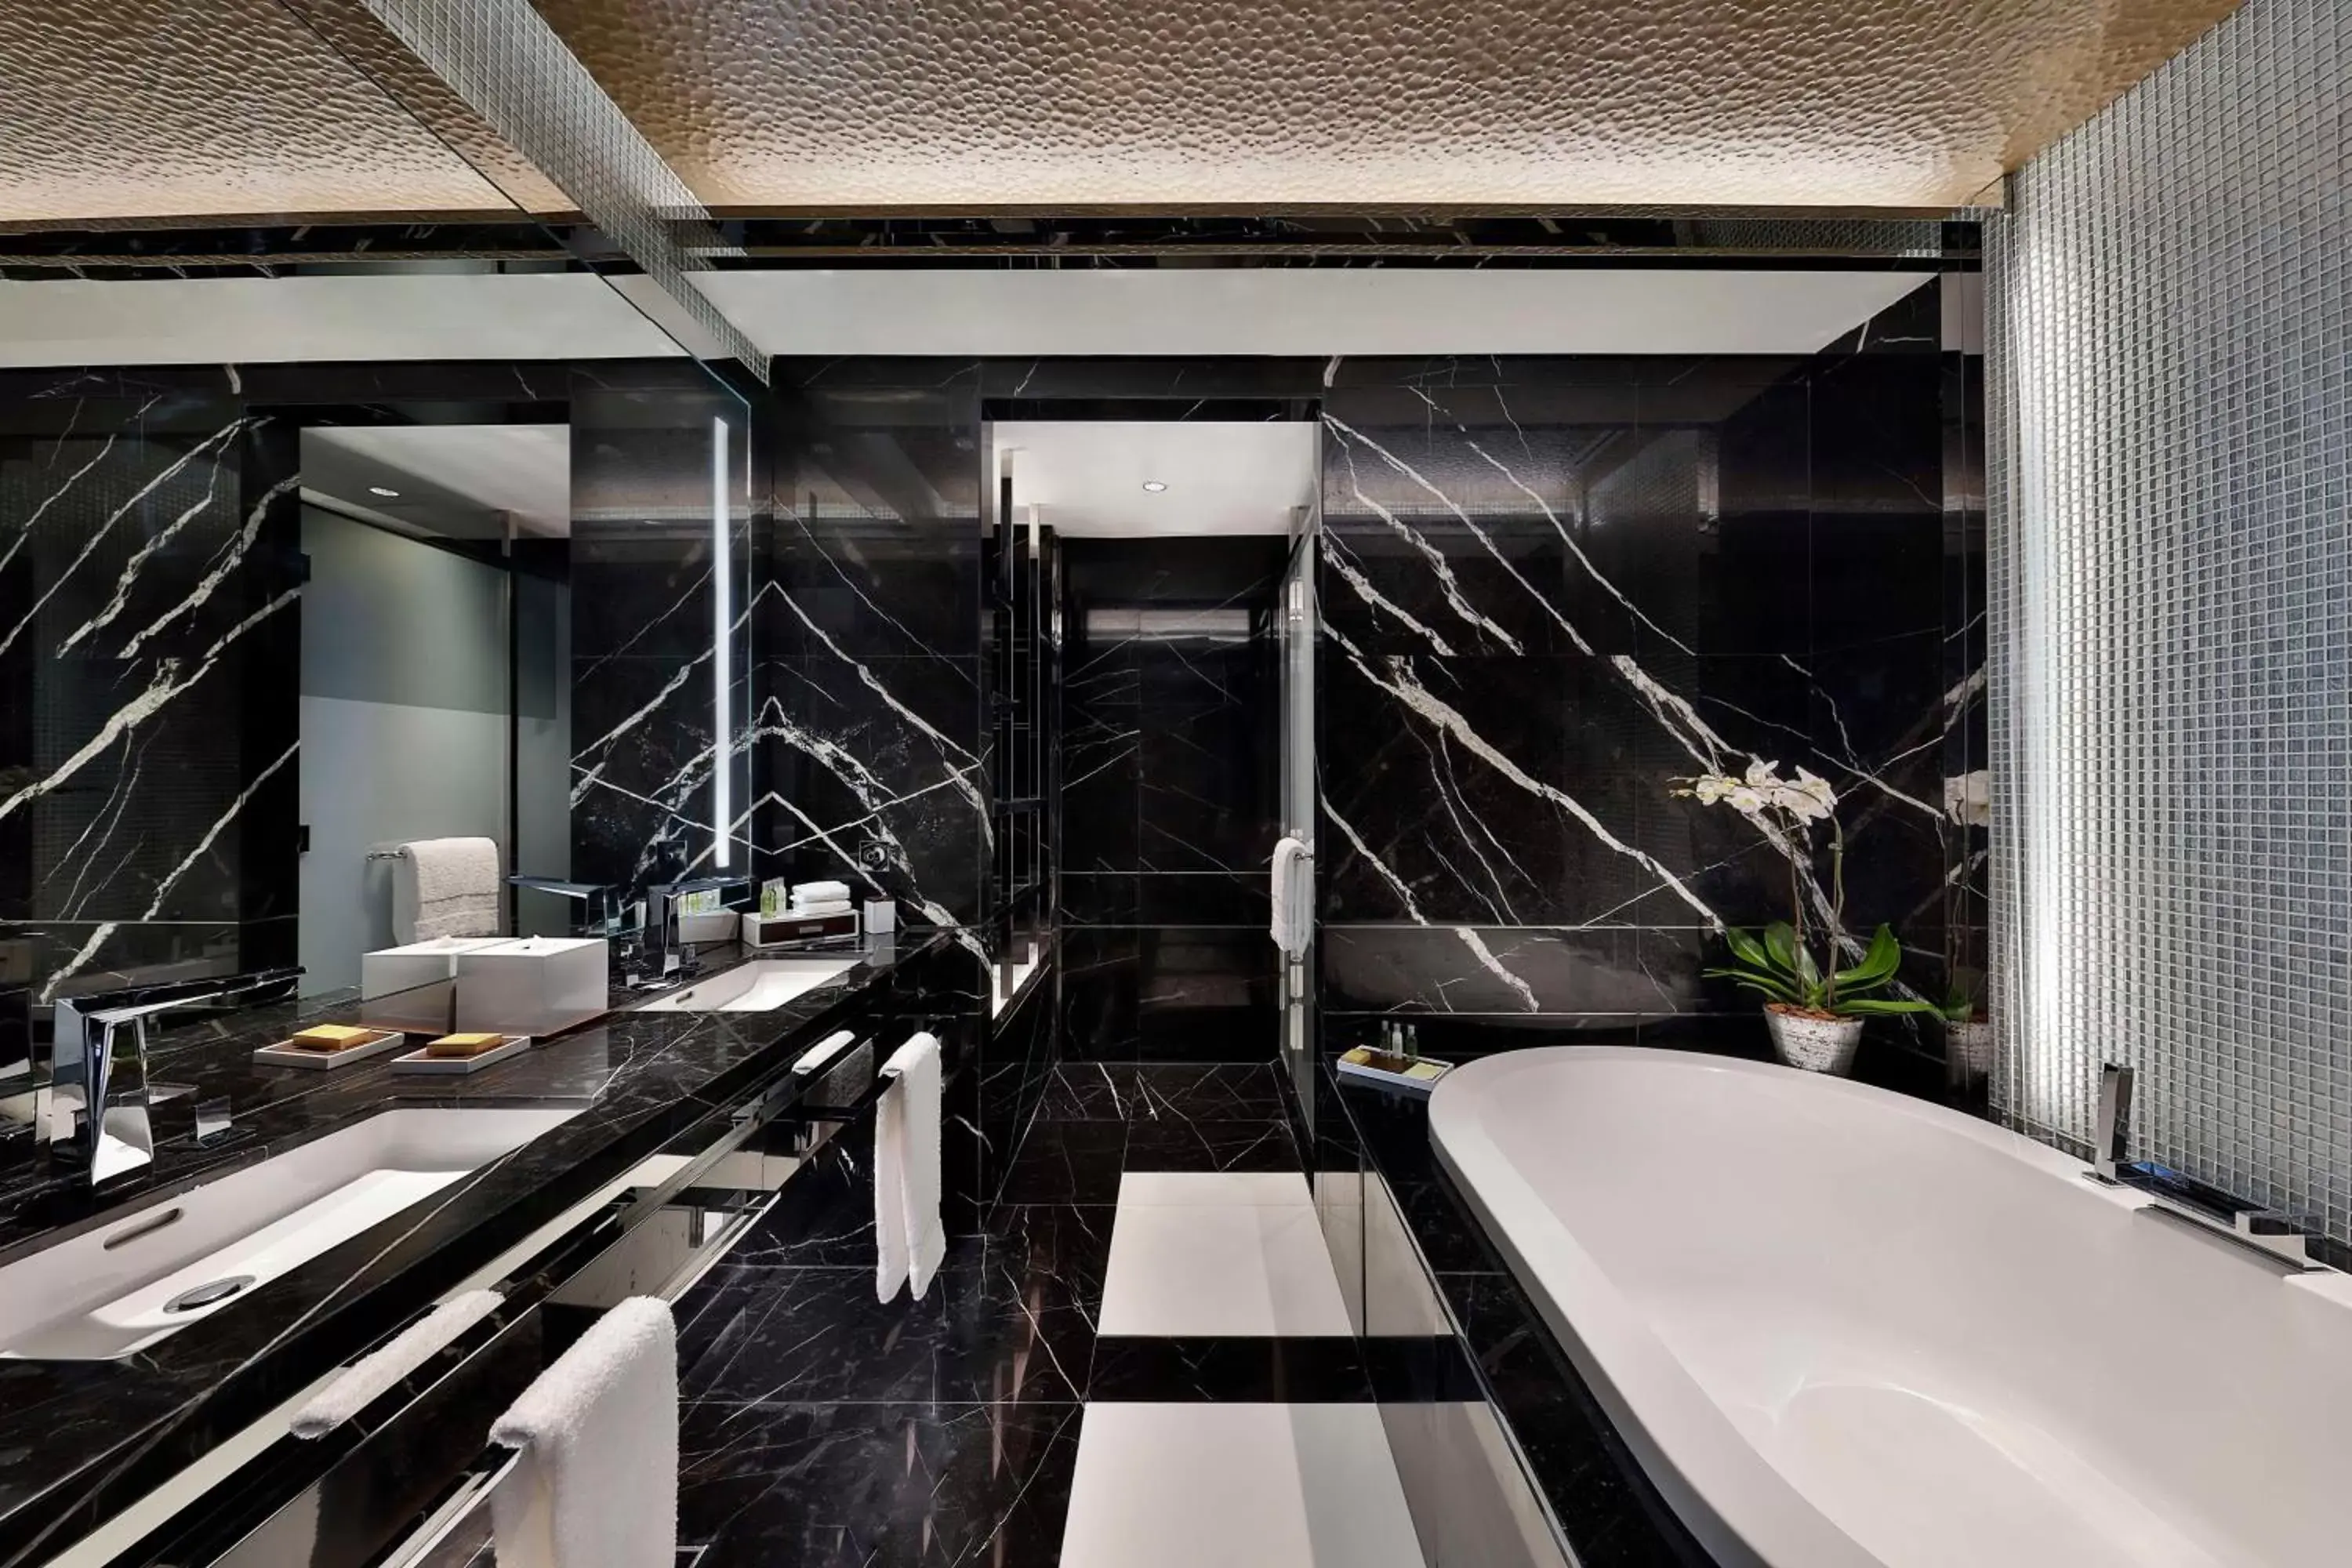 Bathroom in Hilton Dubai Palm Jumeirah